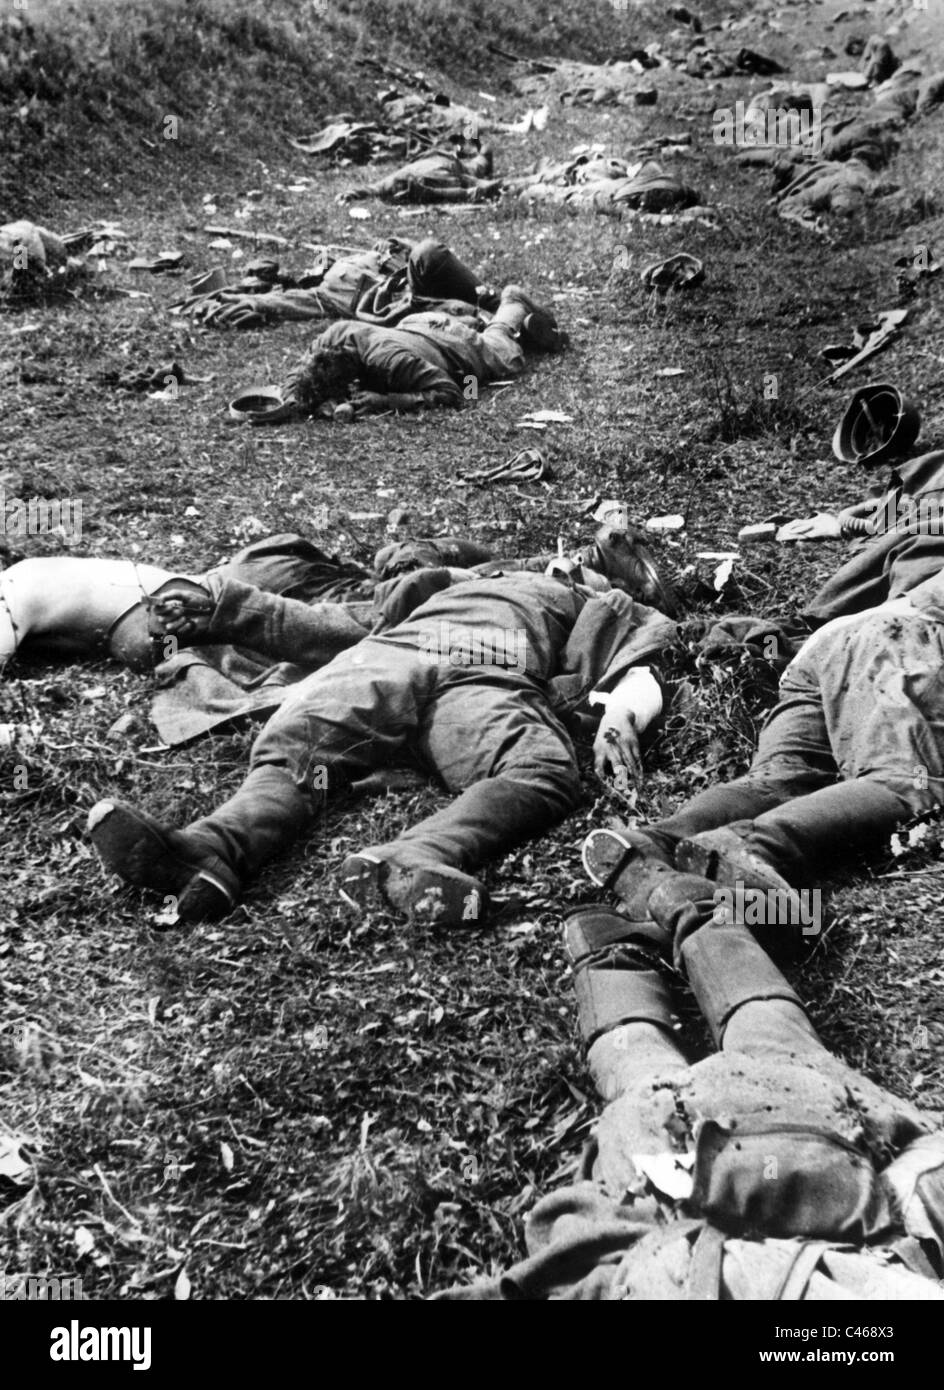 Zweiter Weltkrieg: Tote Soldaten der Roten Armee an der Ostfront  Stockfotografie - Alamy